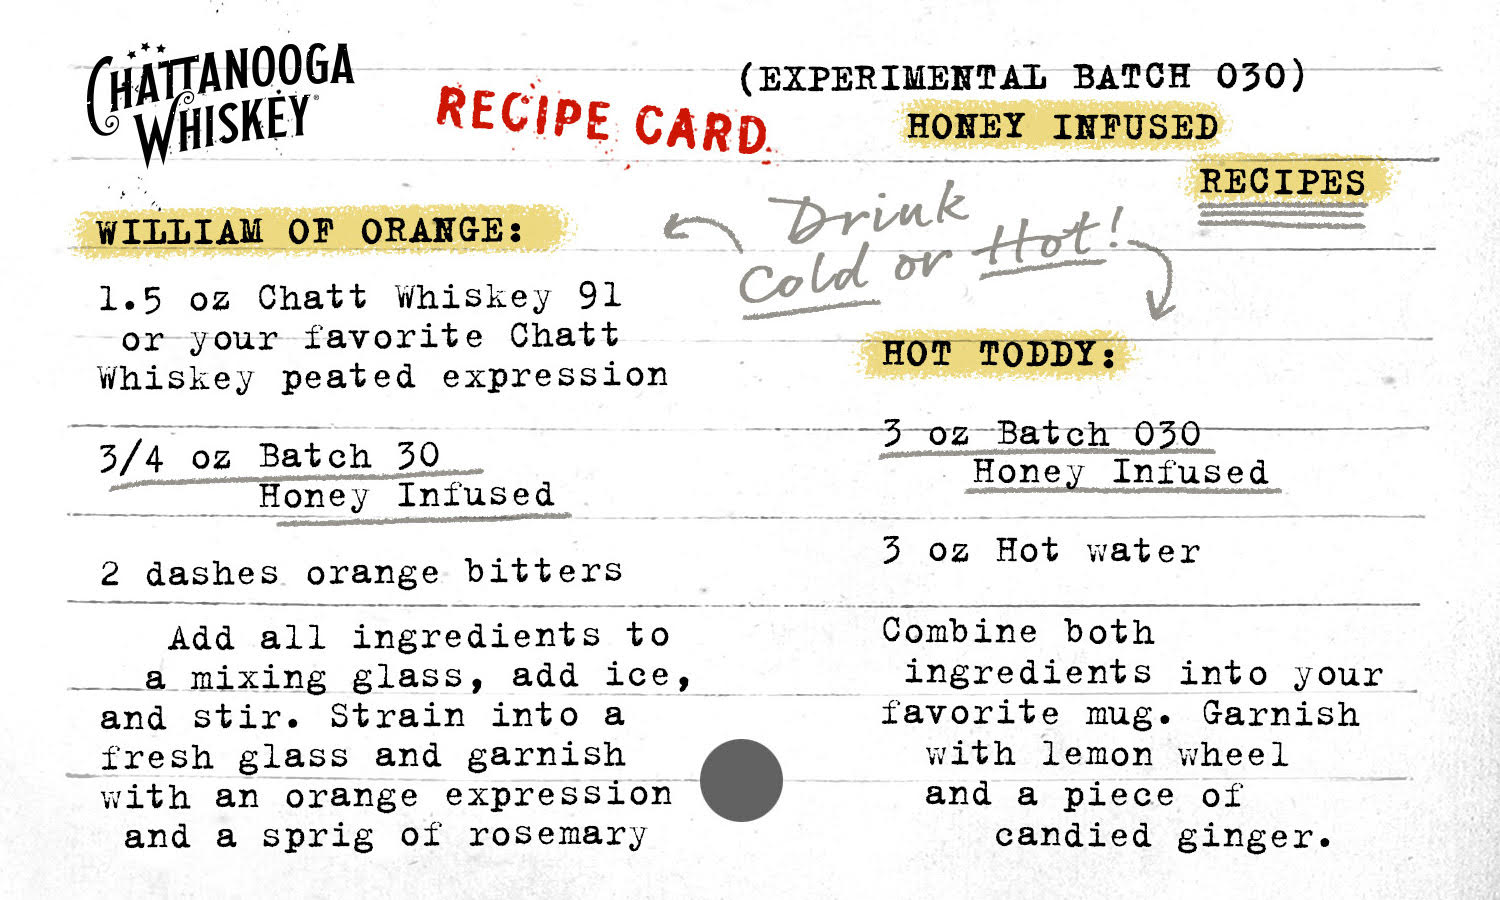 Batch 030 Recipe Card